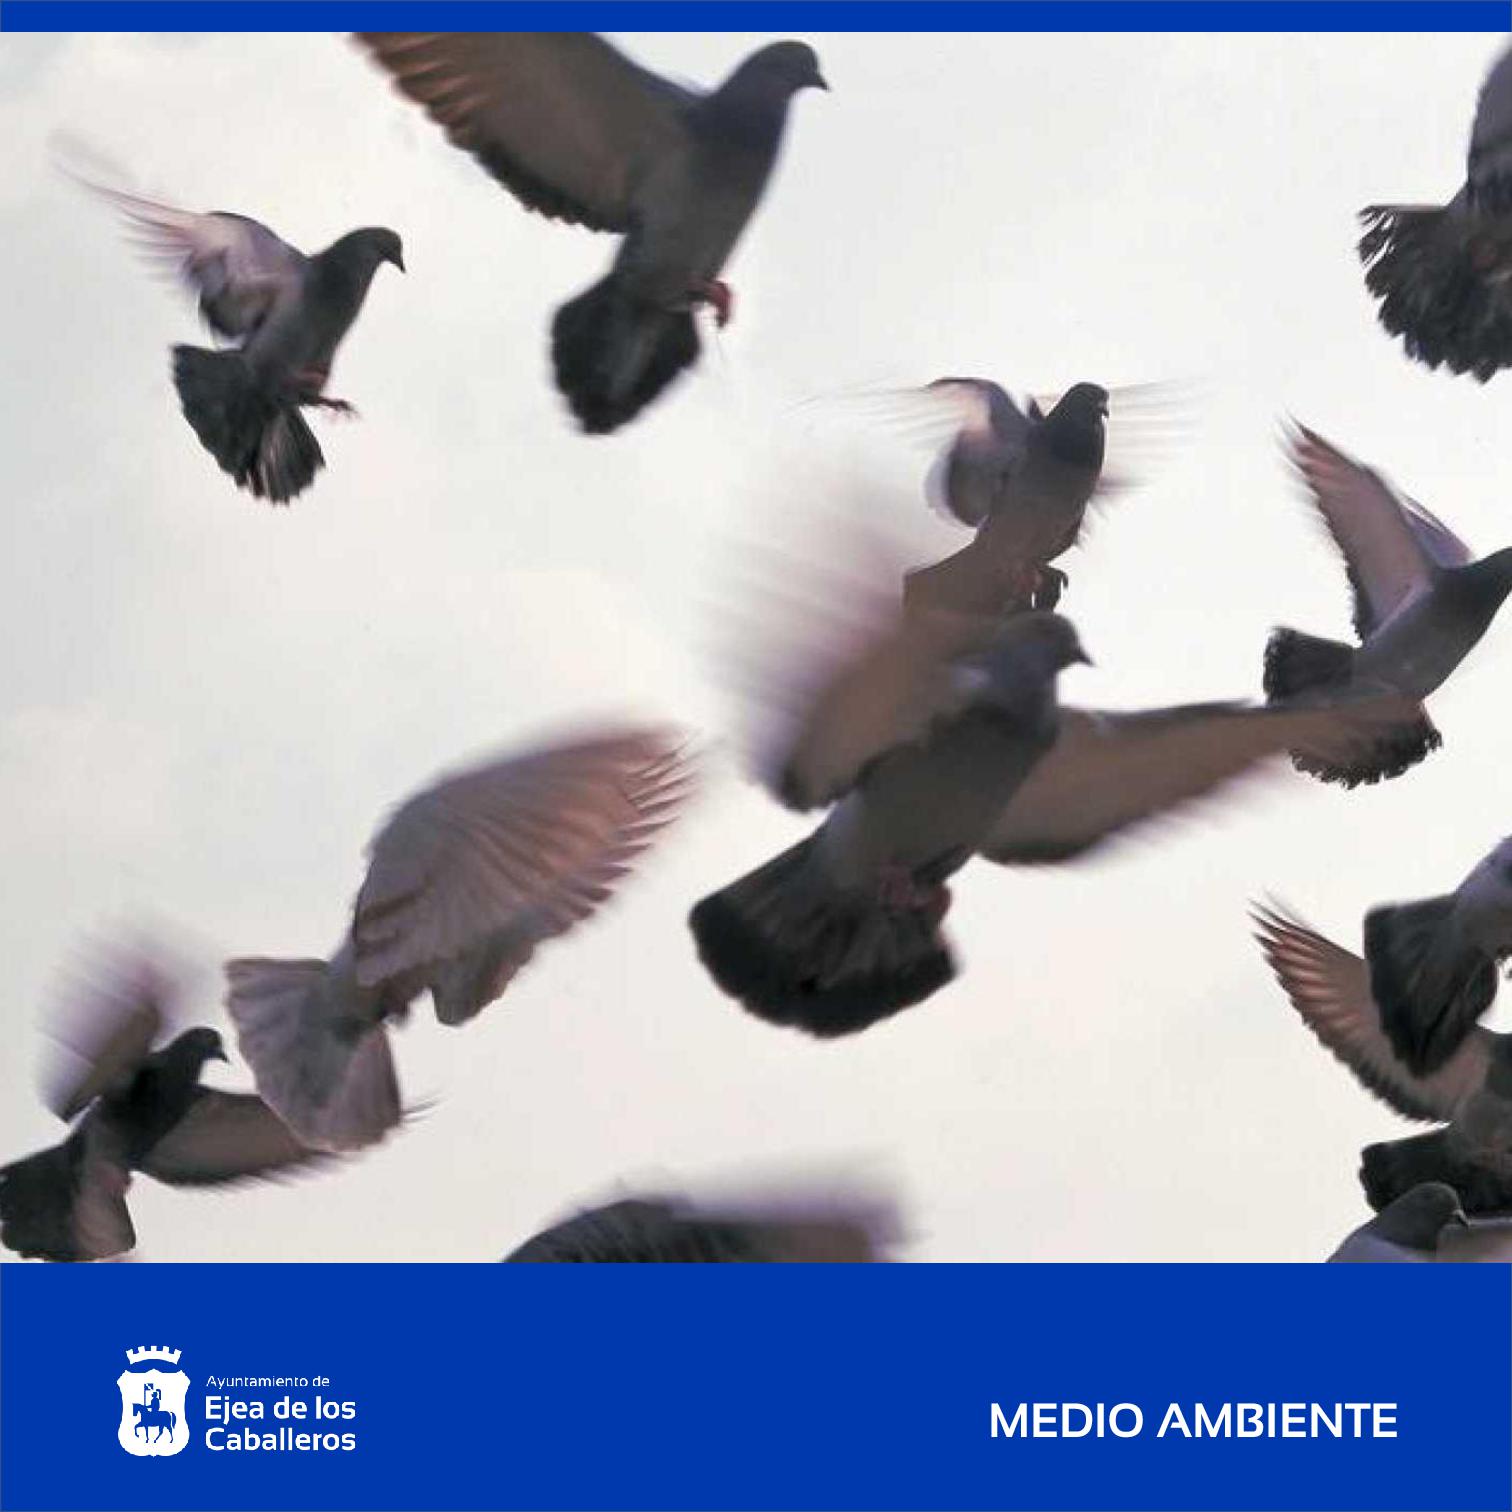 En este momento estás viendo El Ayuntamiento de Ejea de los Caballeros y la Cooperativa Virgen de la Oliva colaboran para controlar la sobrepoblación de palomas